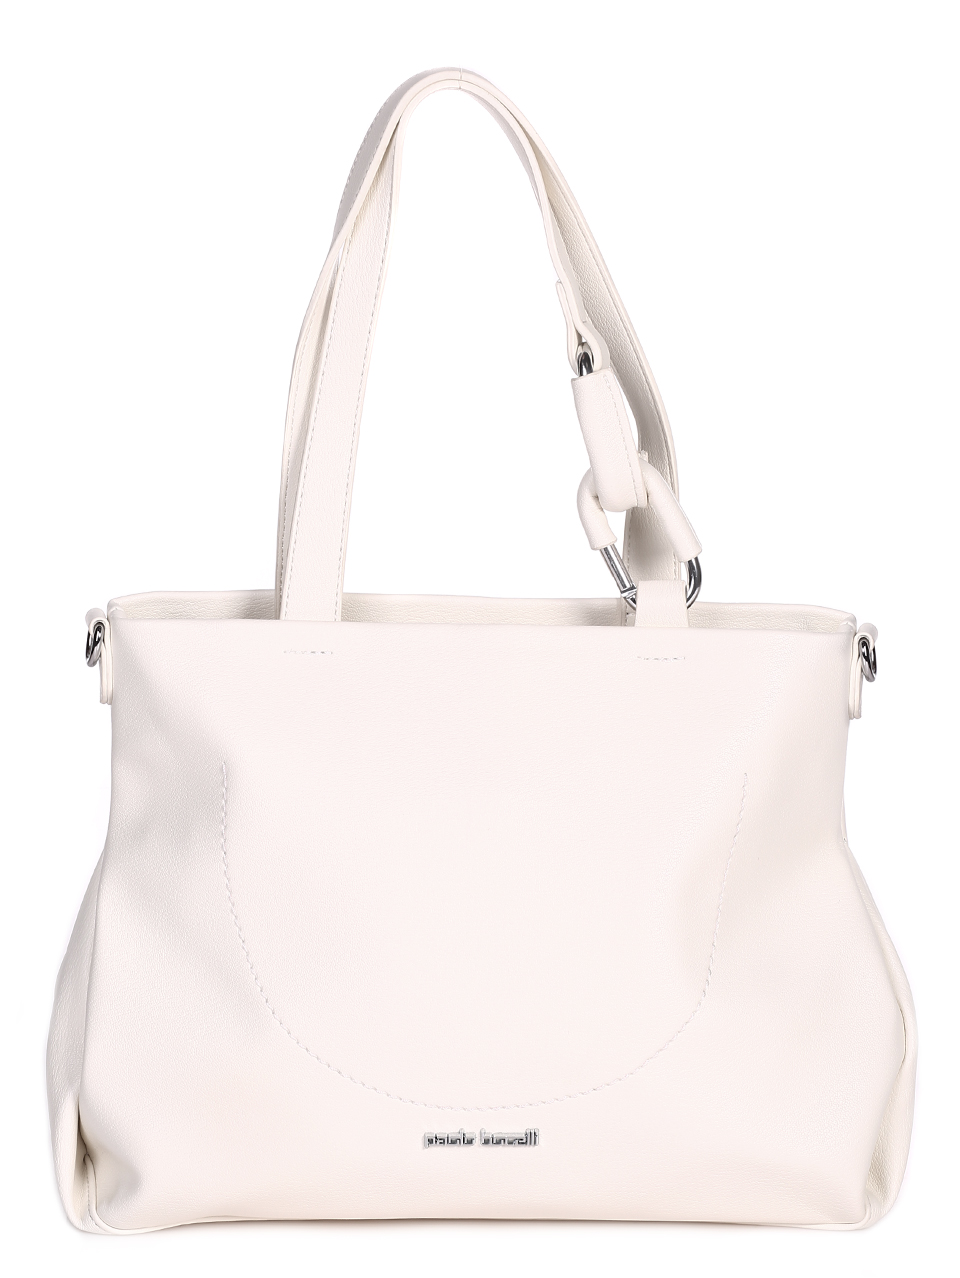 Ежедневна дамска голяма чанта в бяло 9Q-23076 white